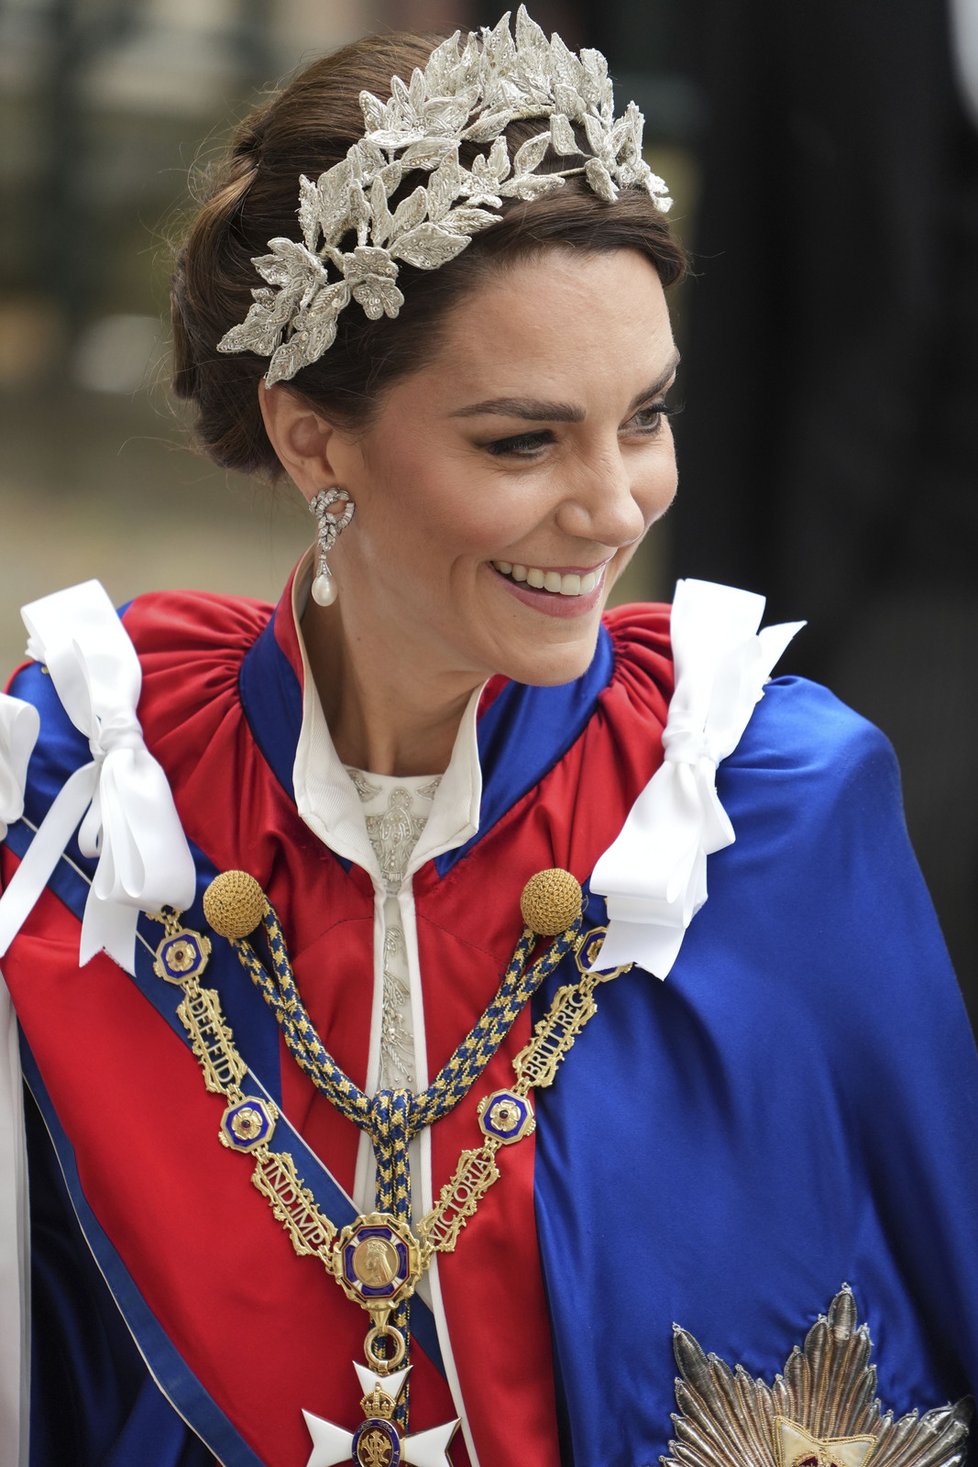 Kate zvolila róbu z dílny Alexandera McQueena. Šperky uctila Dianu i královnu Alžbětu. Čelenkou, kterou měla stejnou s dcerou Charlotte, však porušila tradici